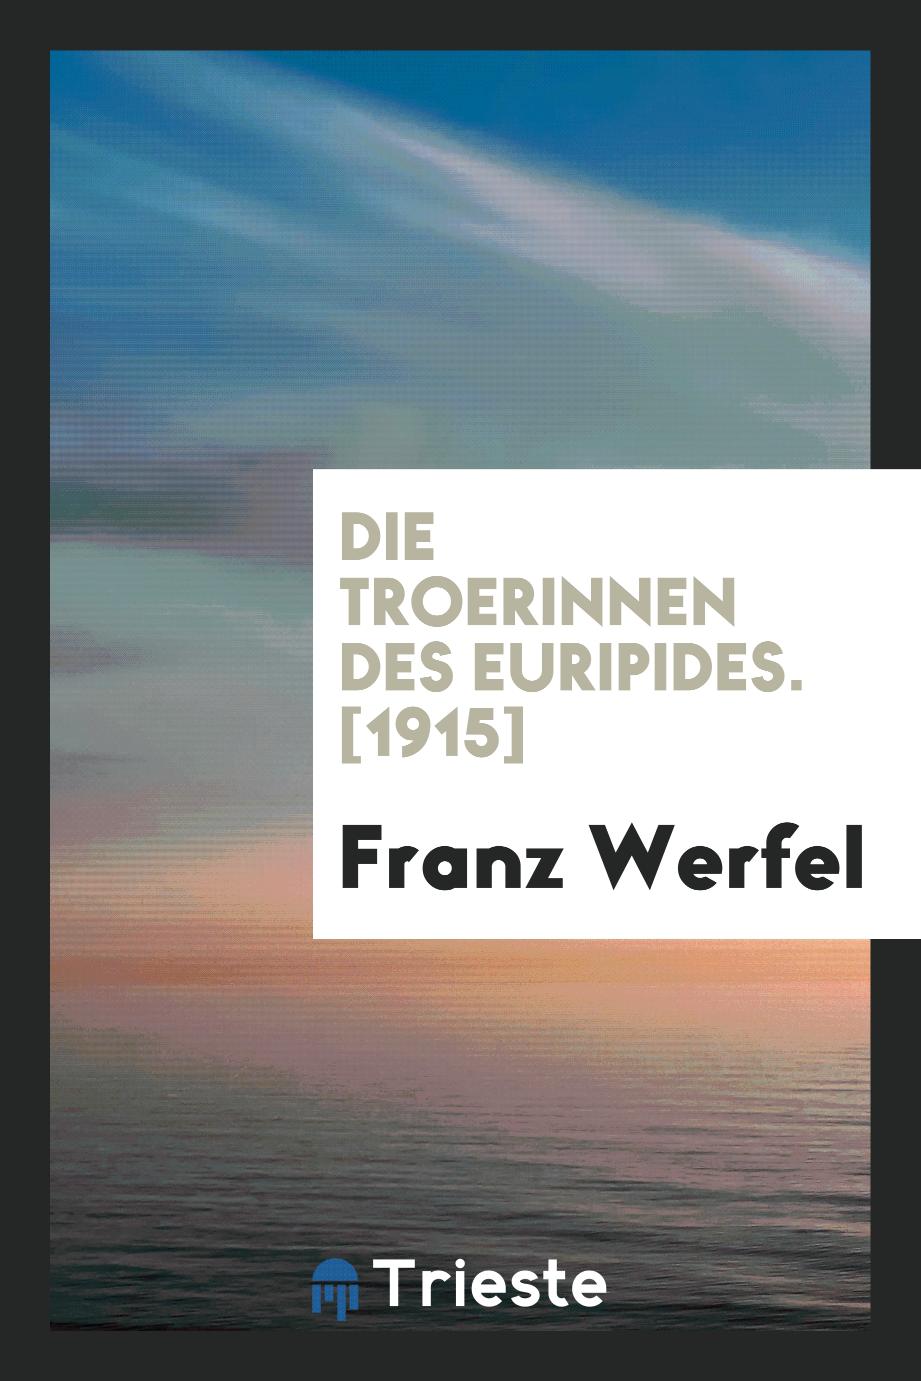 Franz Werfel - Die Troerinnen des Euripides. [1915]